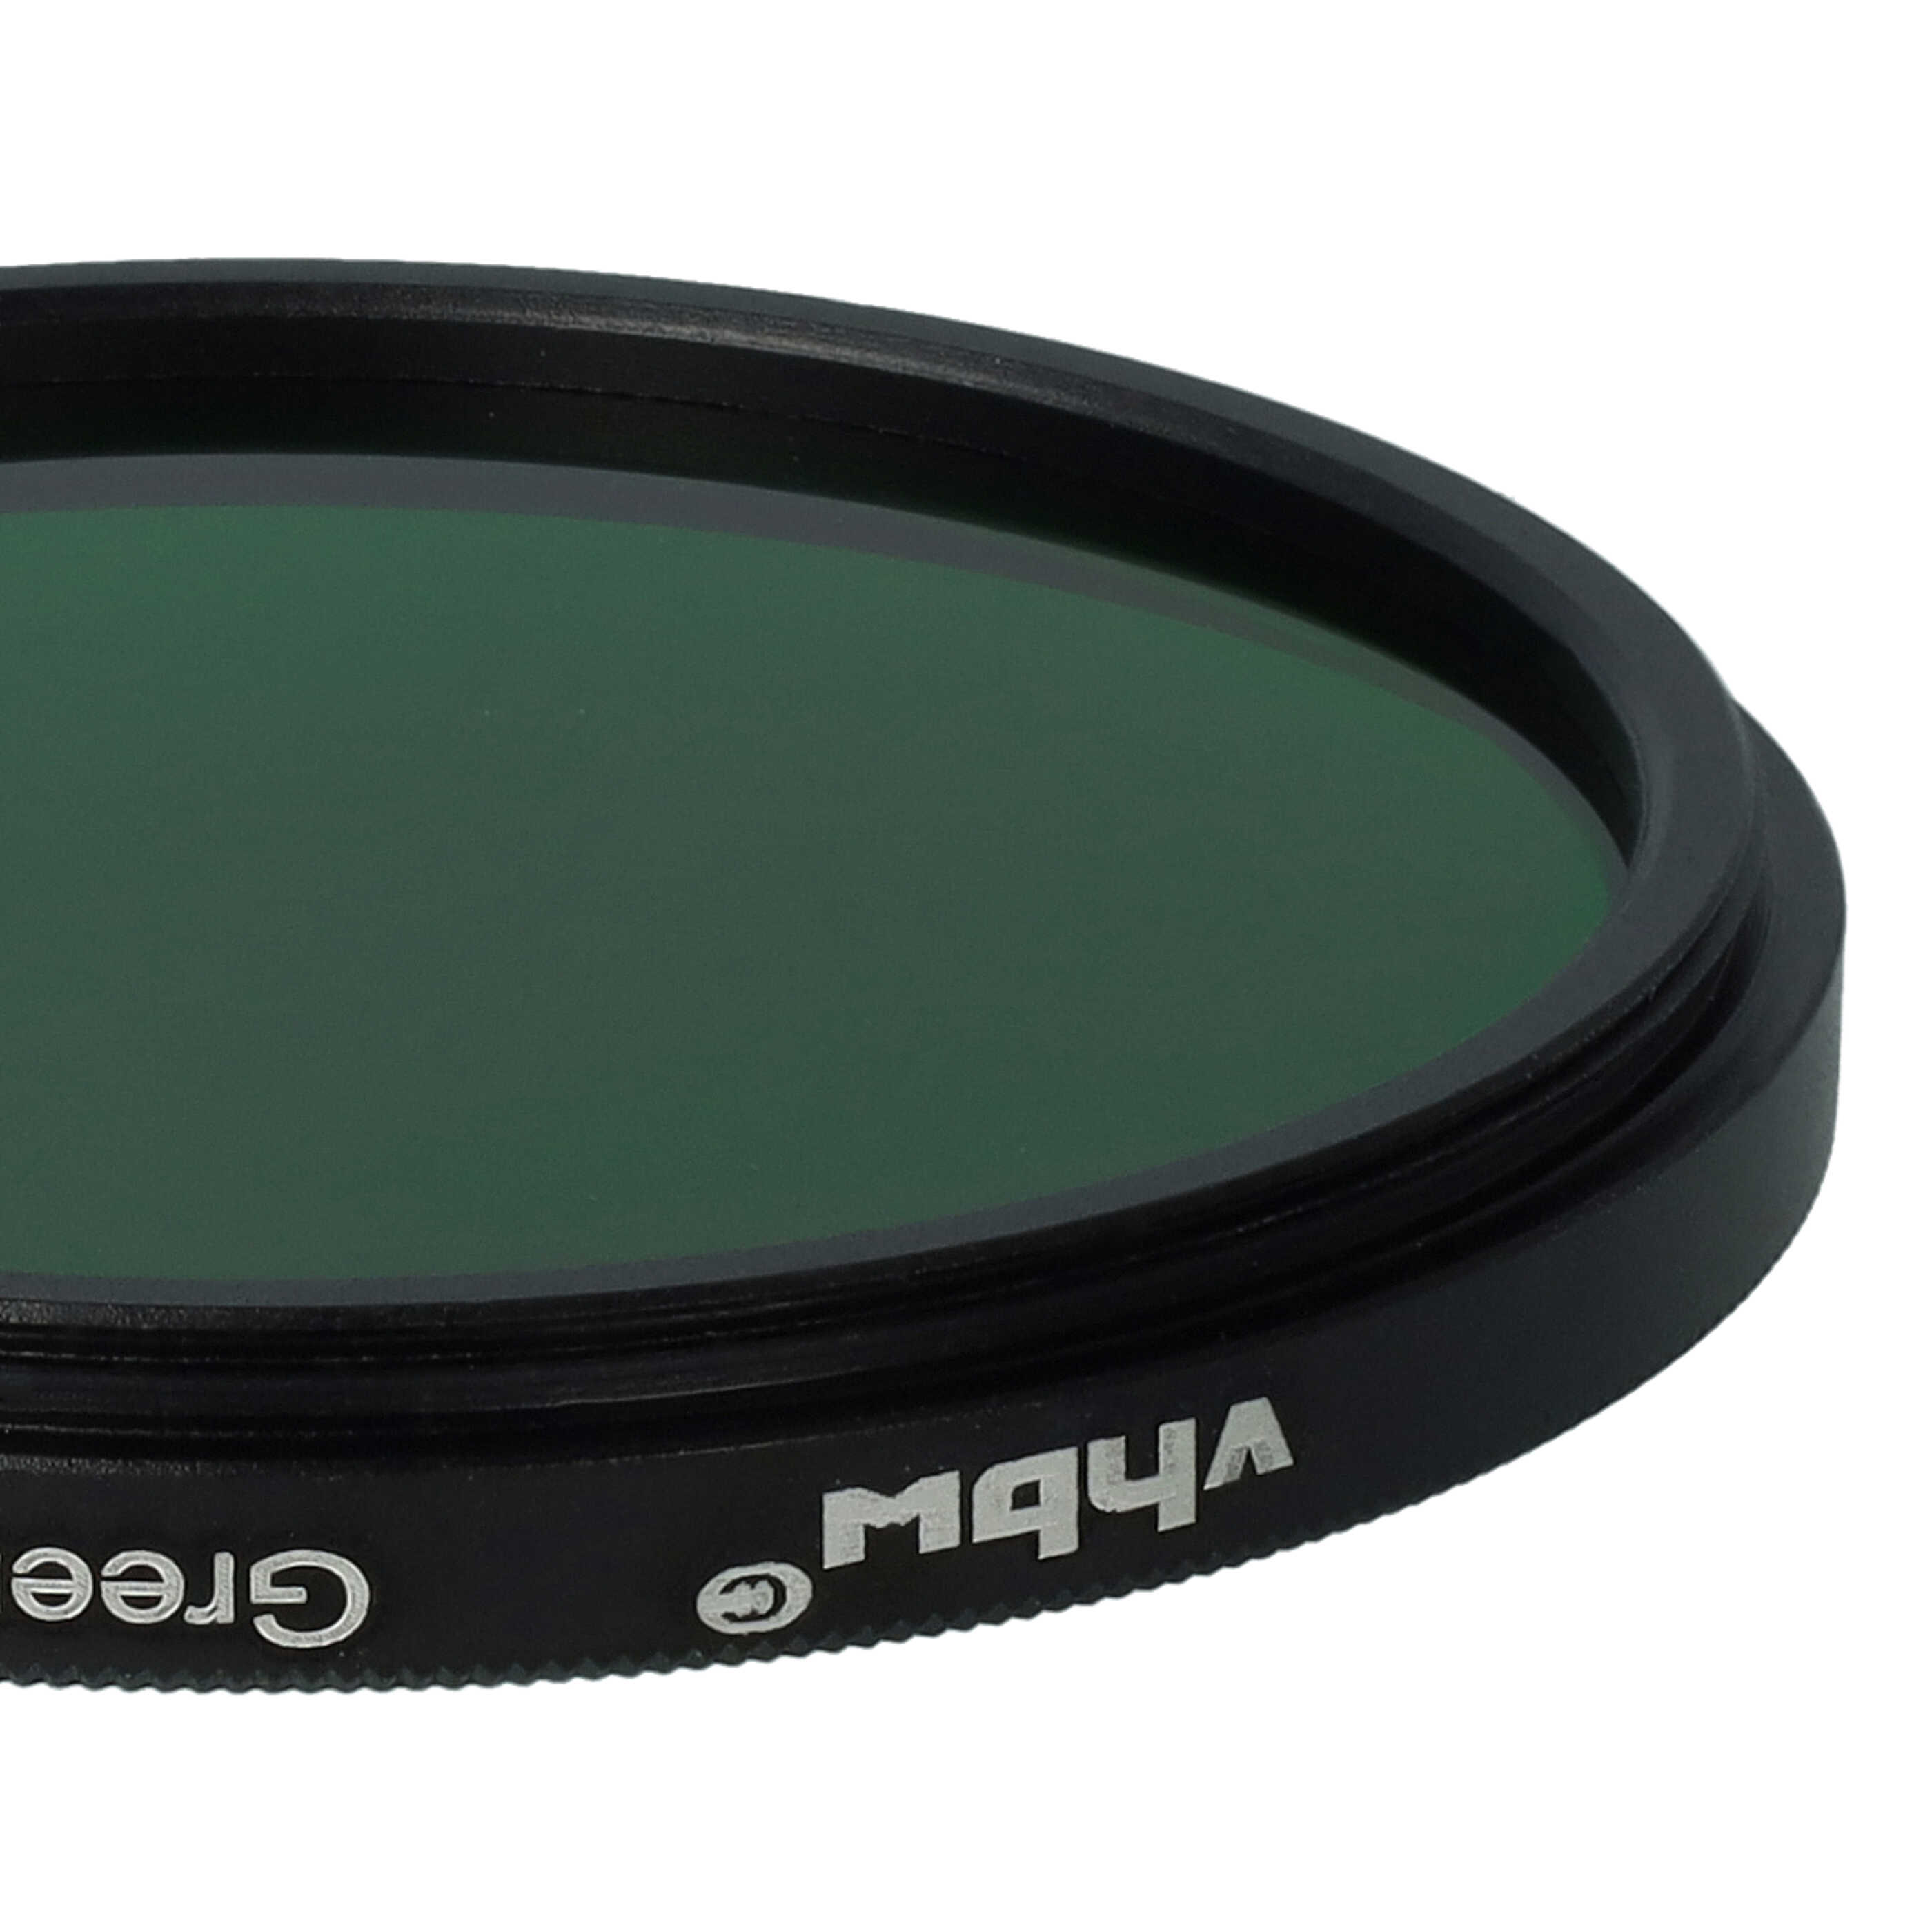 Filtre de couleur vert pour objectifs d'appareils photo de 52 mm - Filtre vert